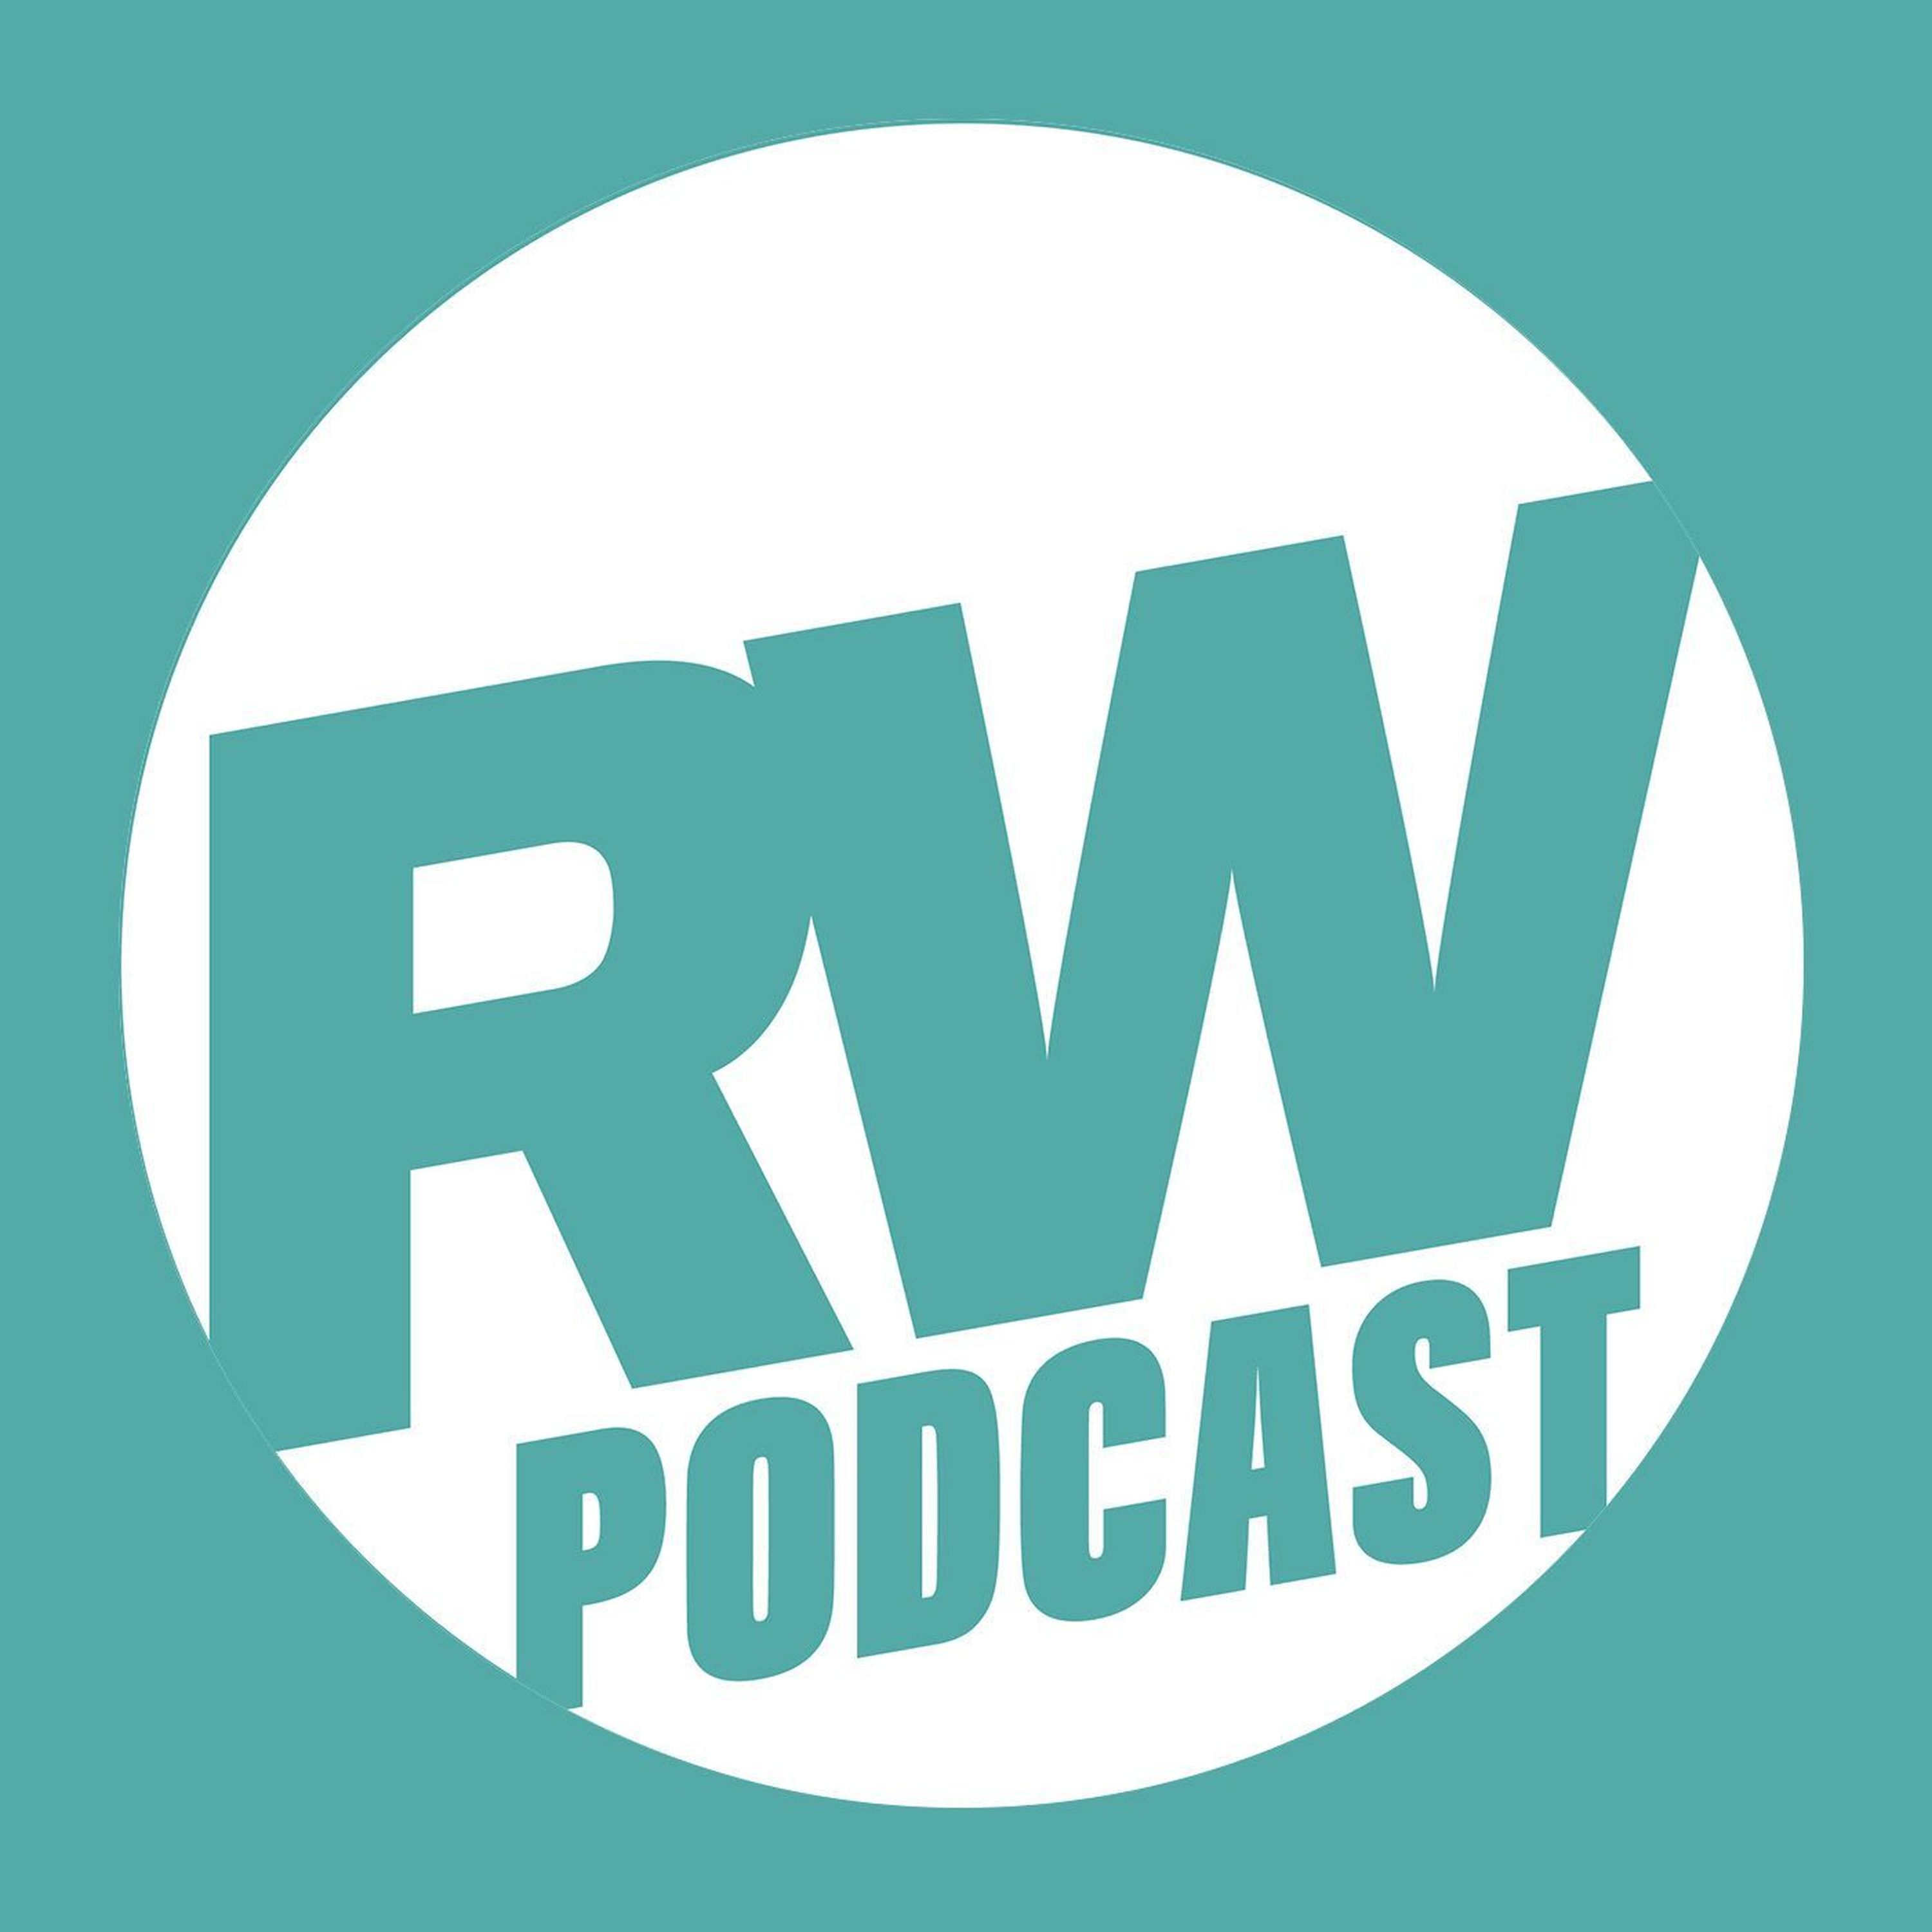 The Runner’s World UK Podcast - August 2018